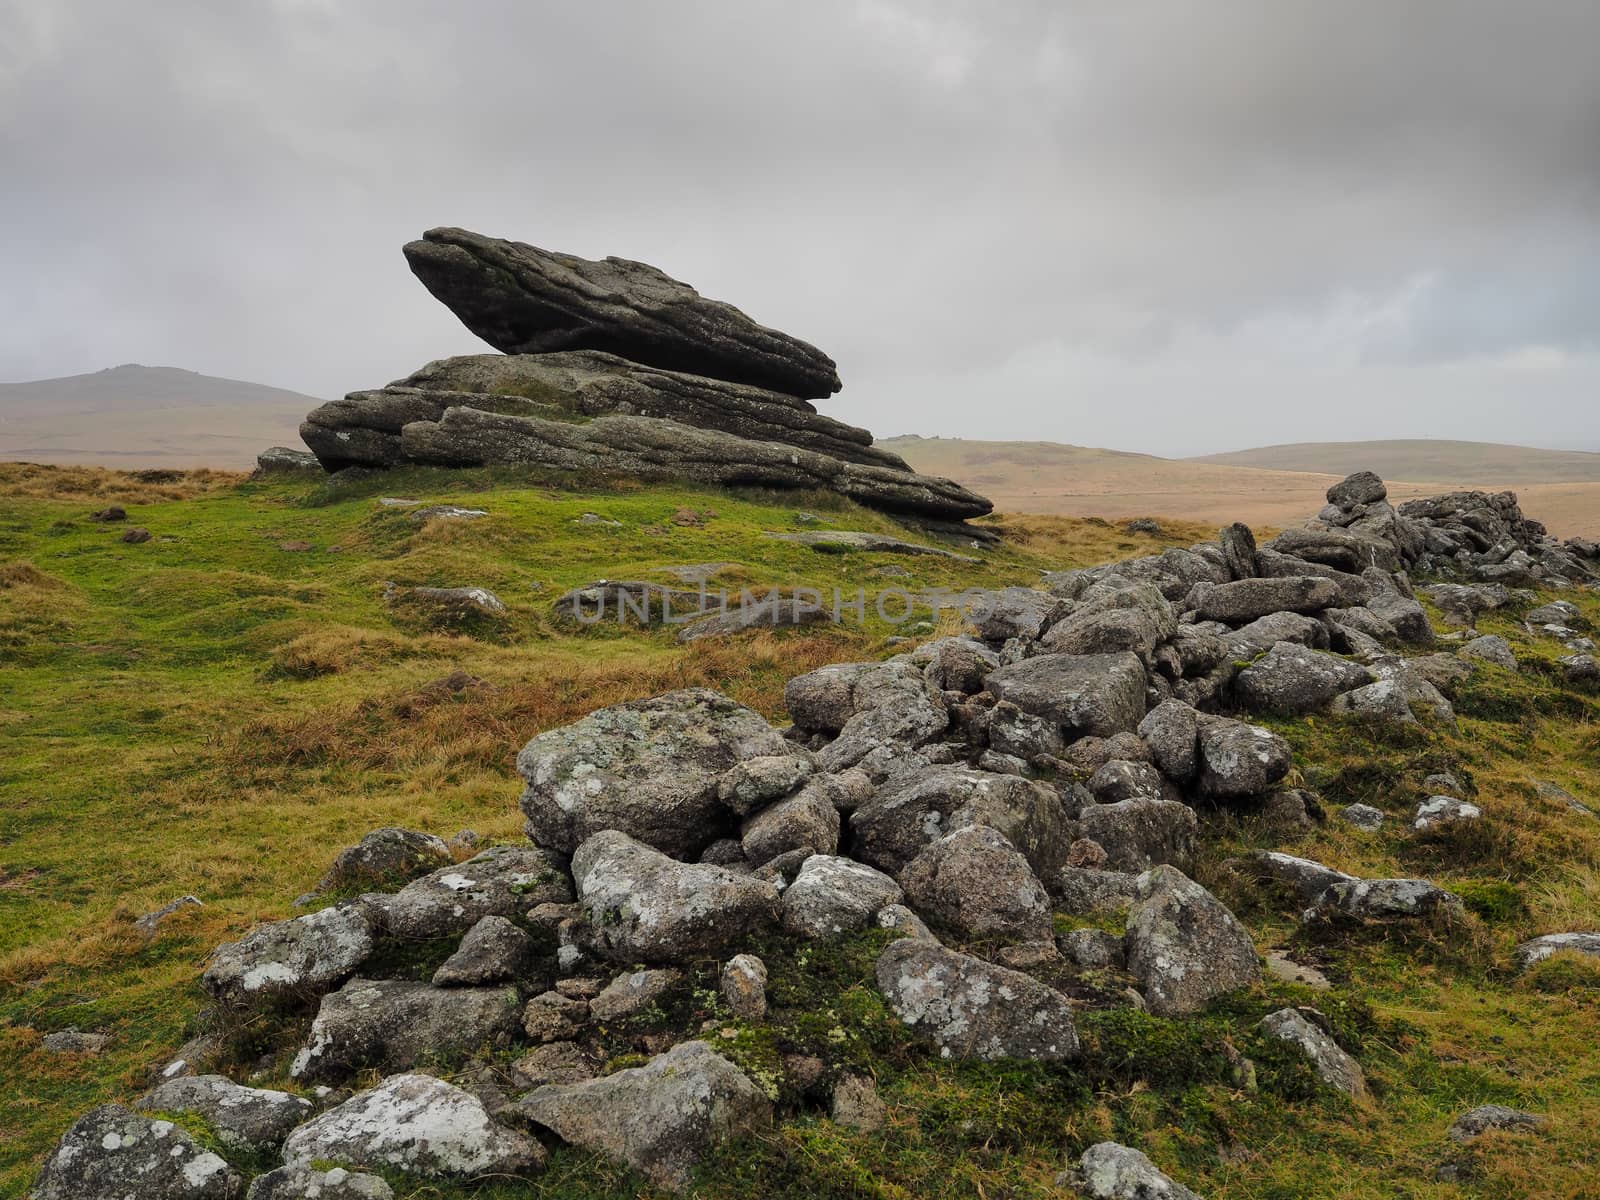 Rabbit Rock and Irishman's Wall next to Belstone Tor set under a grey sky, Dartmoor National Park, Devon, UK